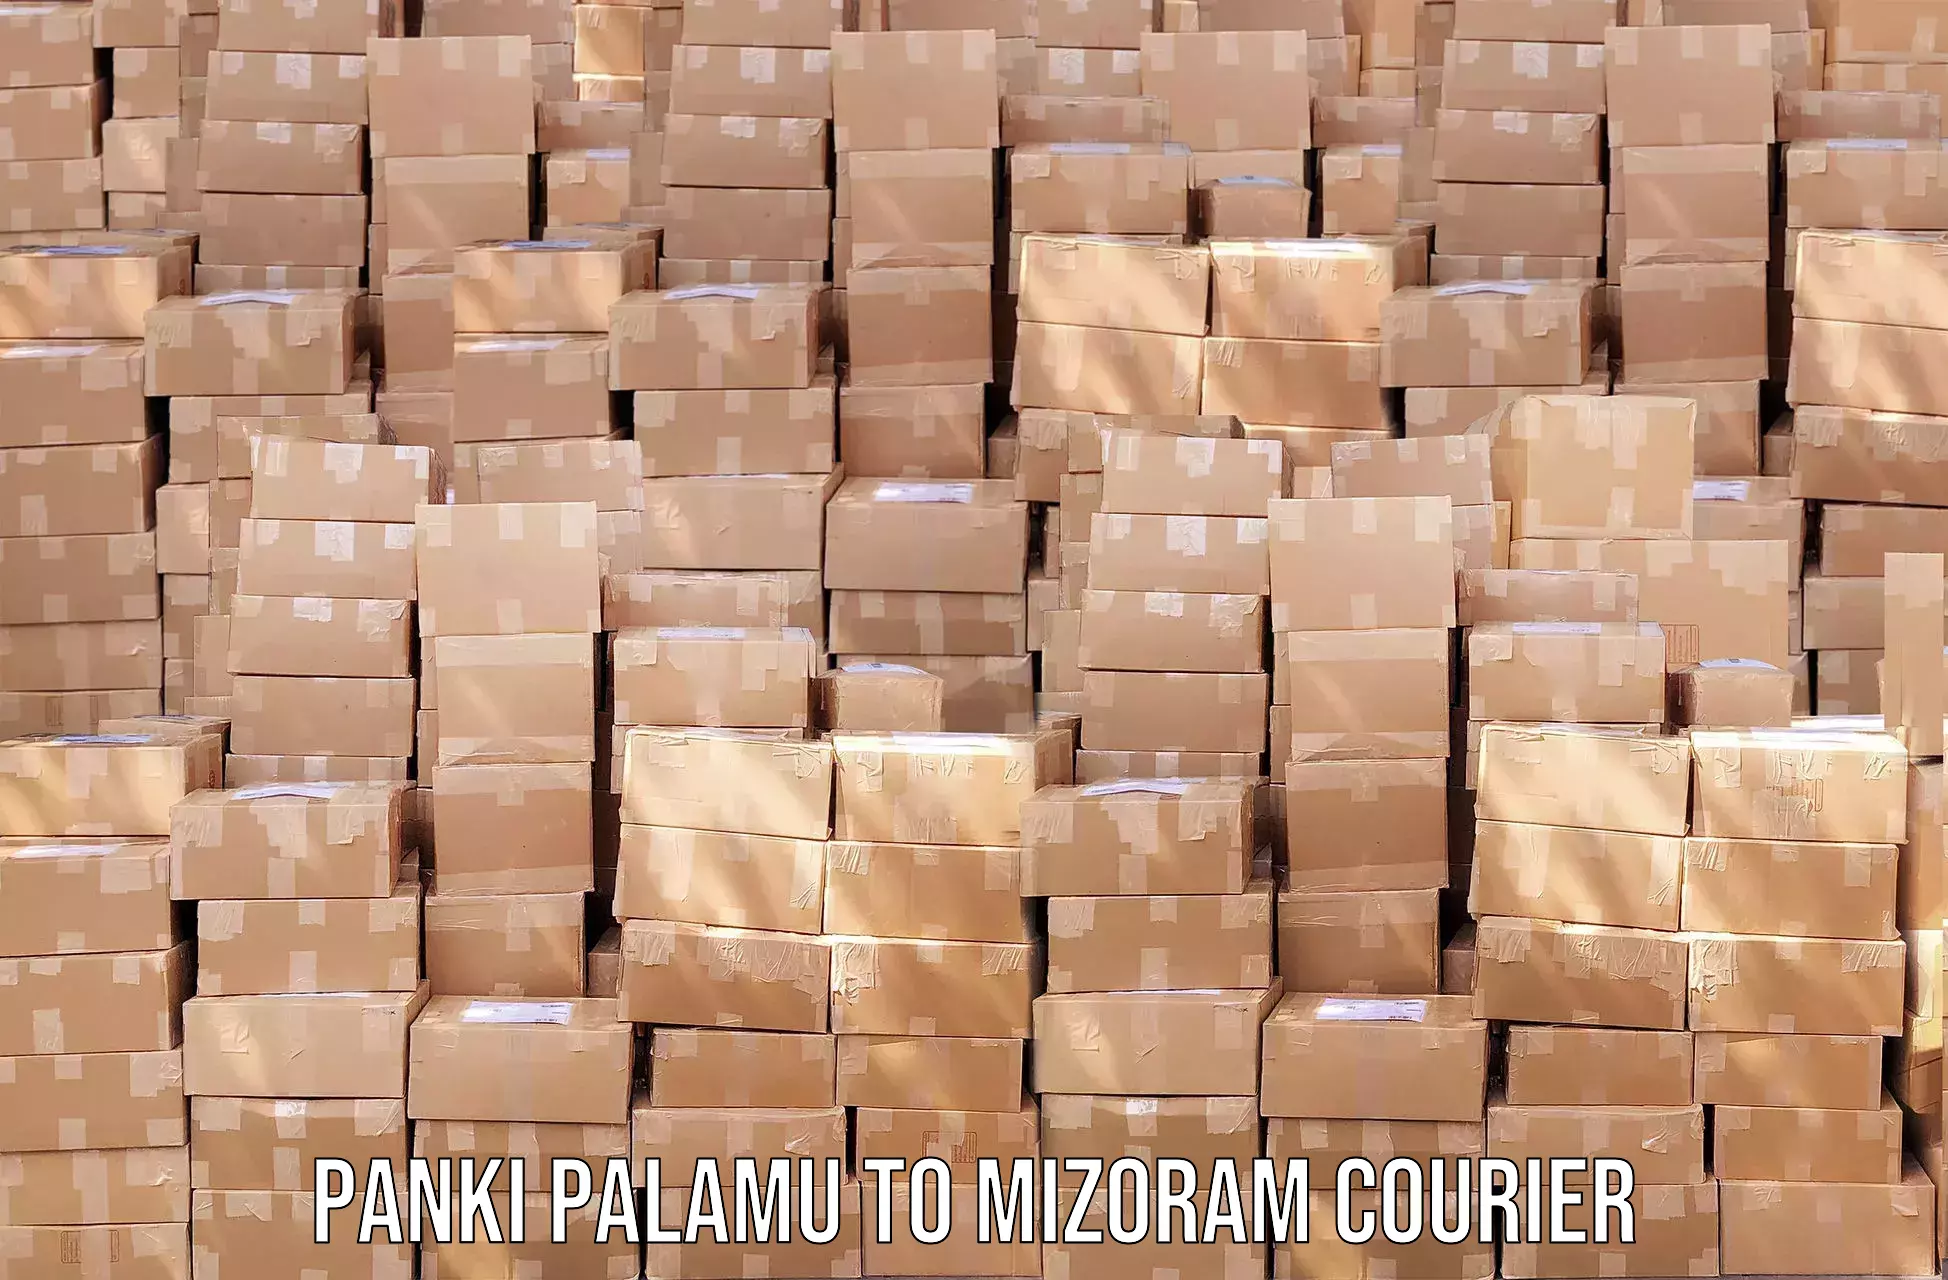 Reliable freight solutions Panki Palamu to Mizoram